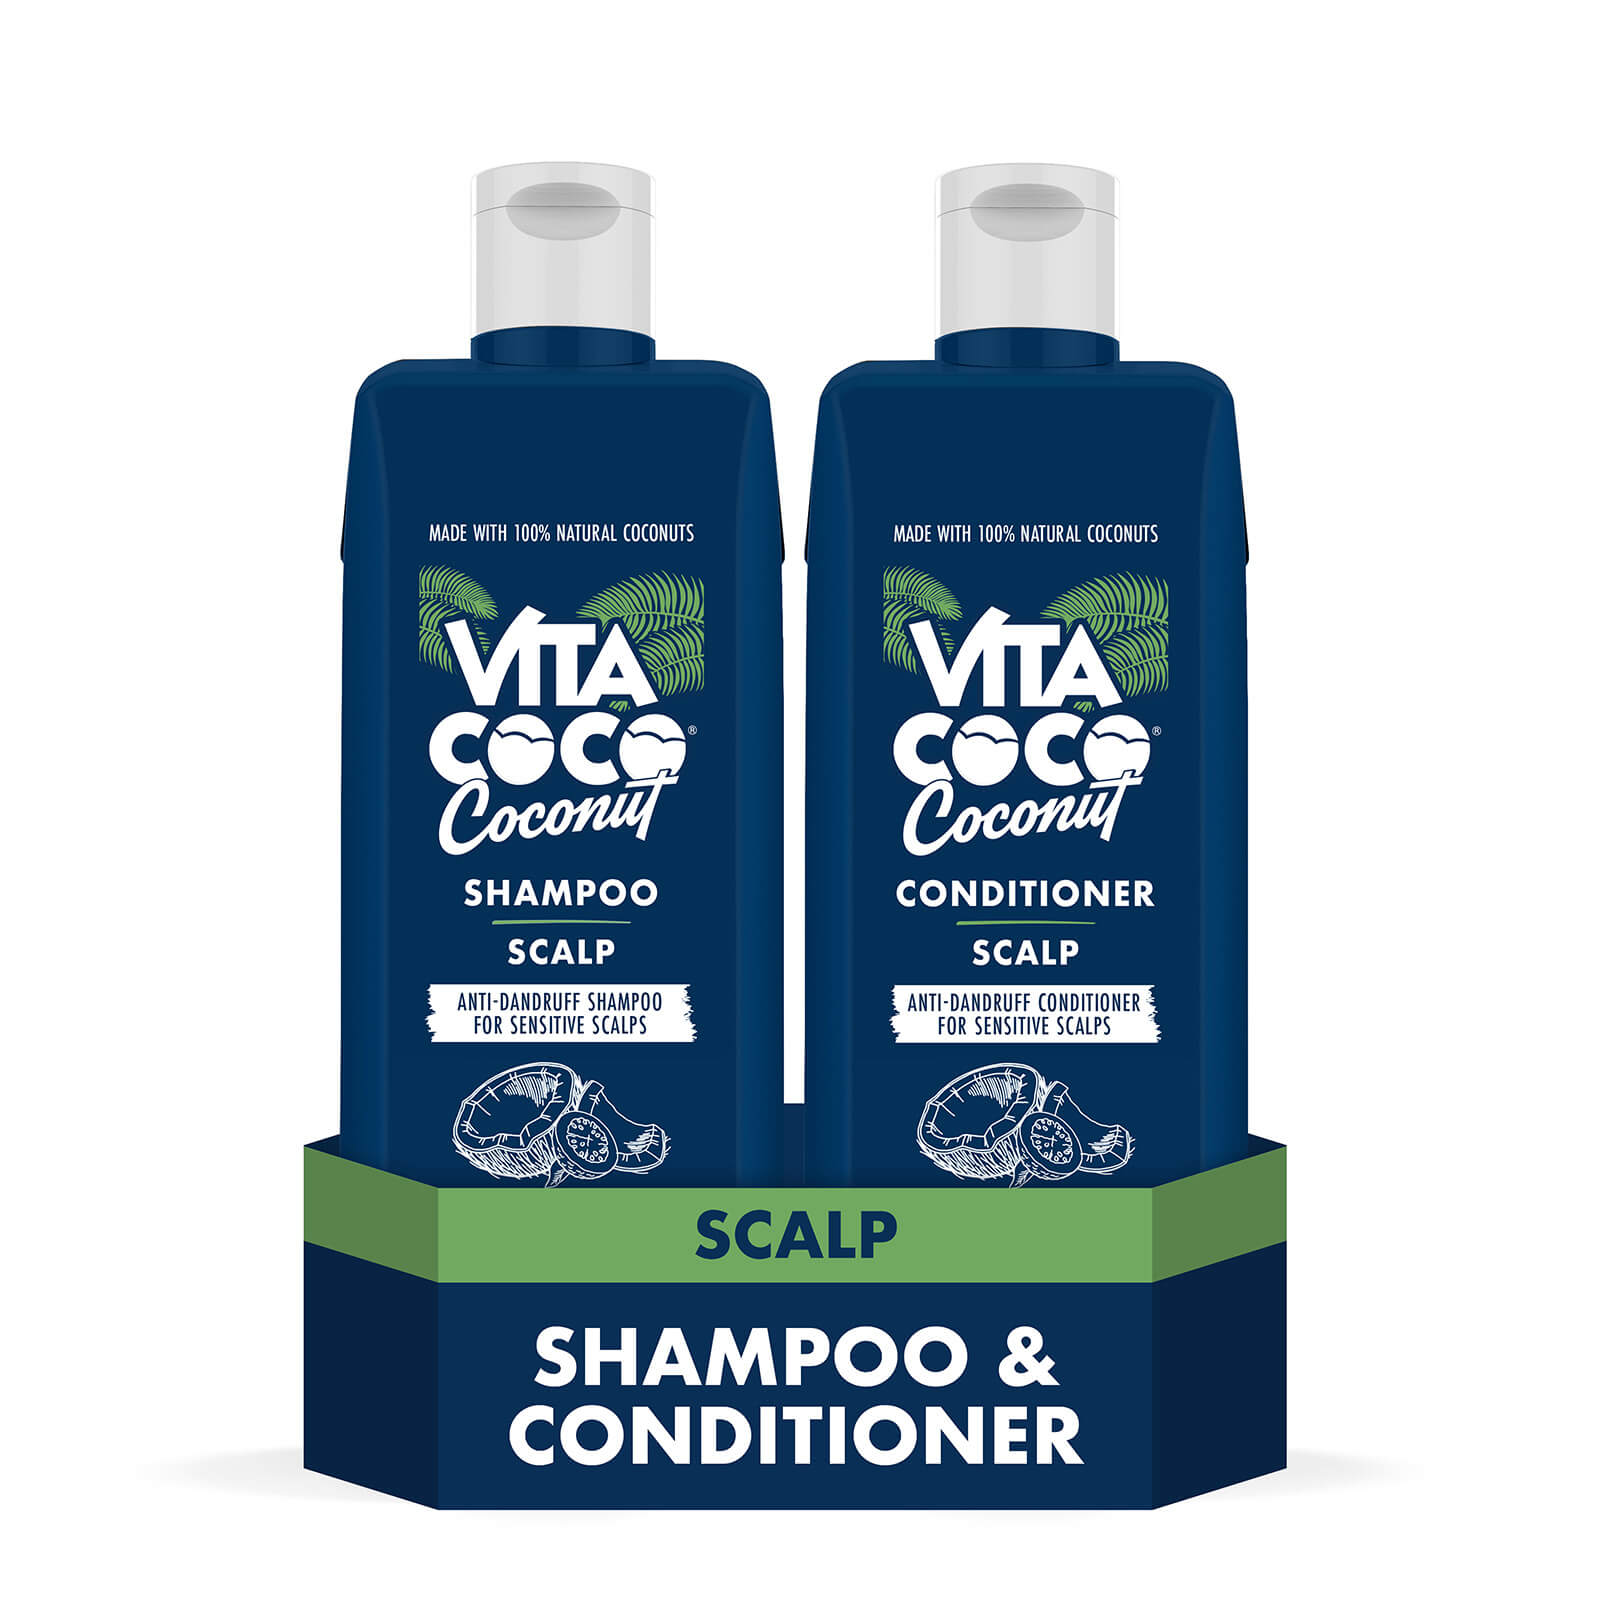 Scalp Coconut & Guava Shampoo & Conditioner